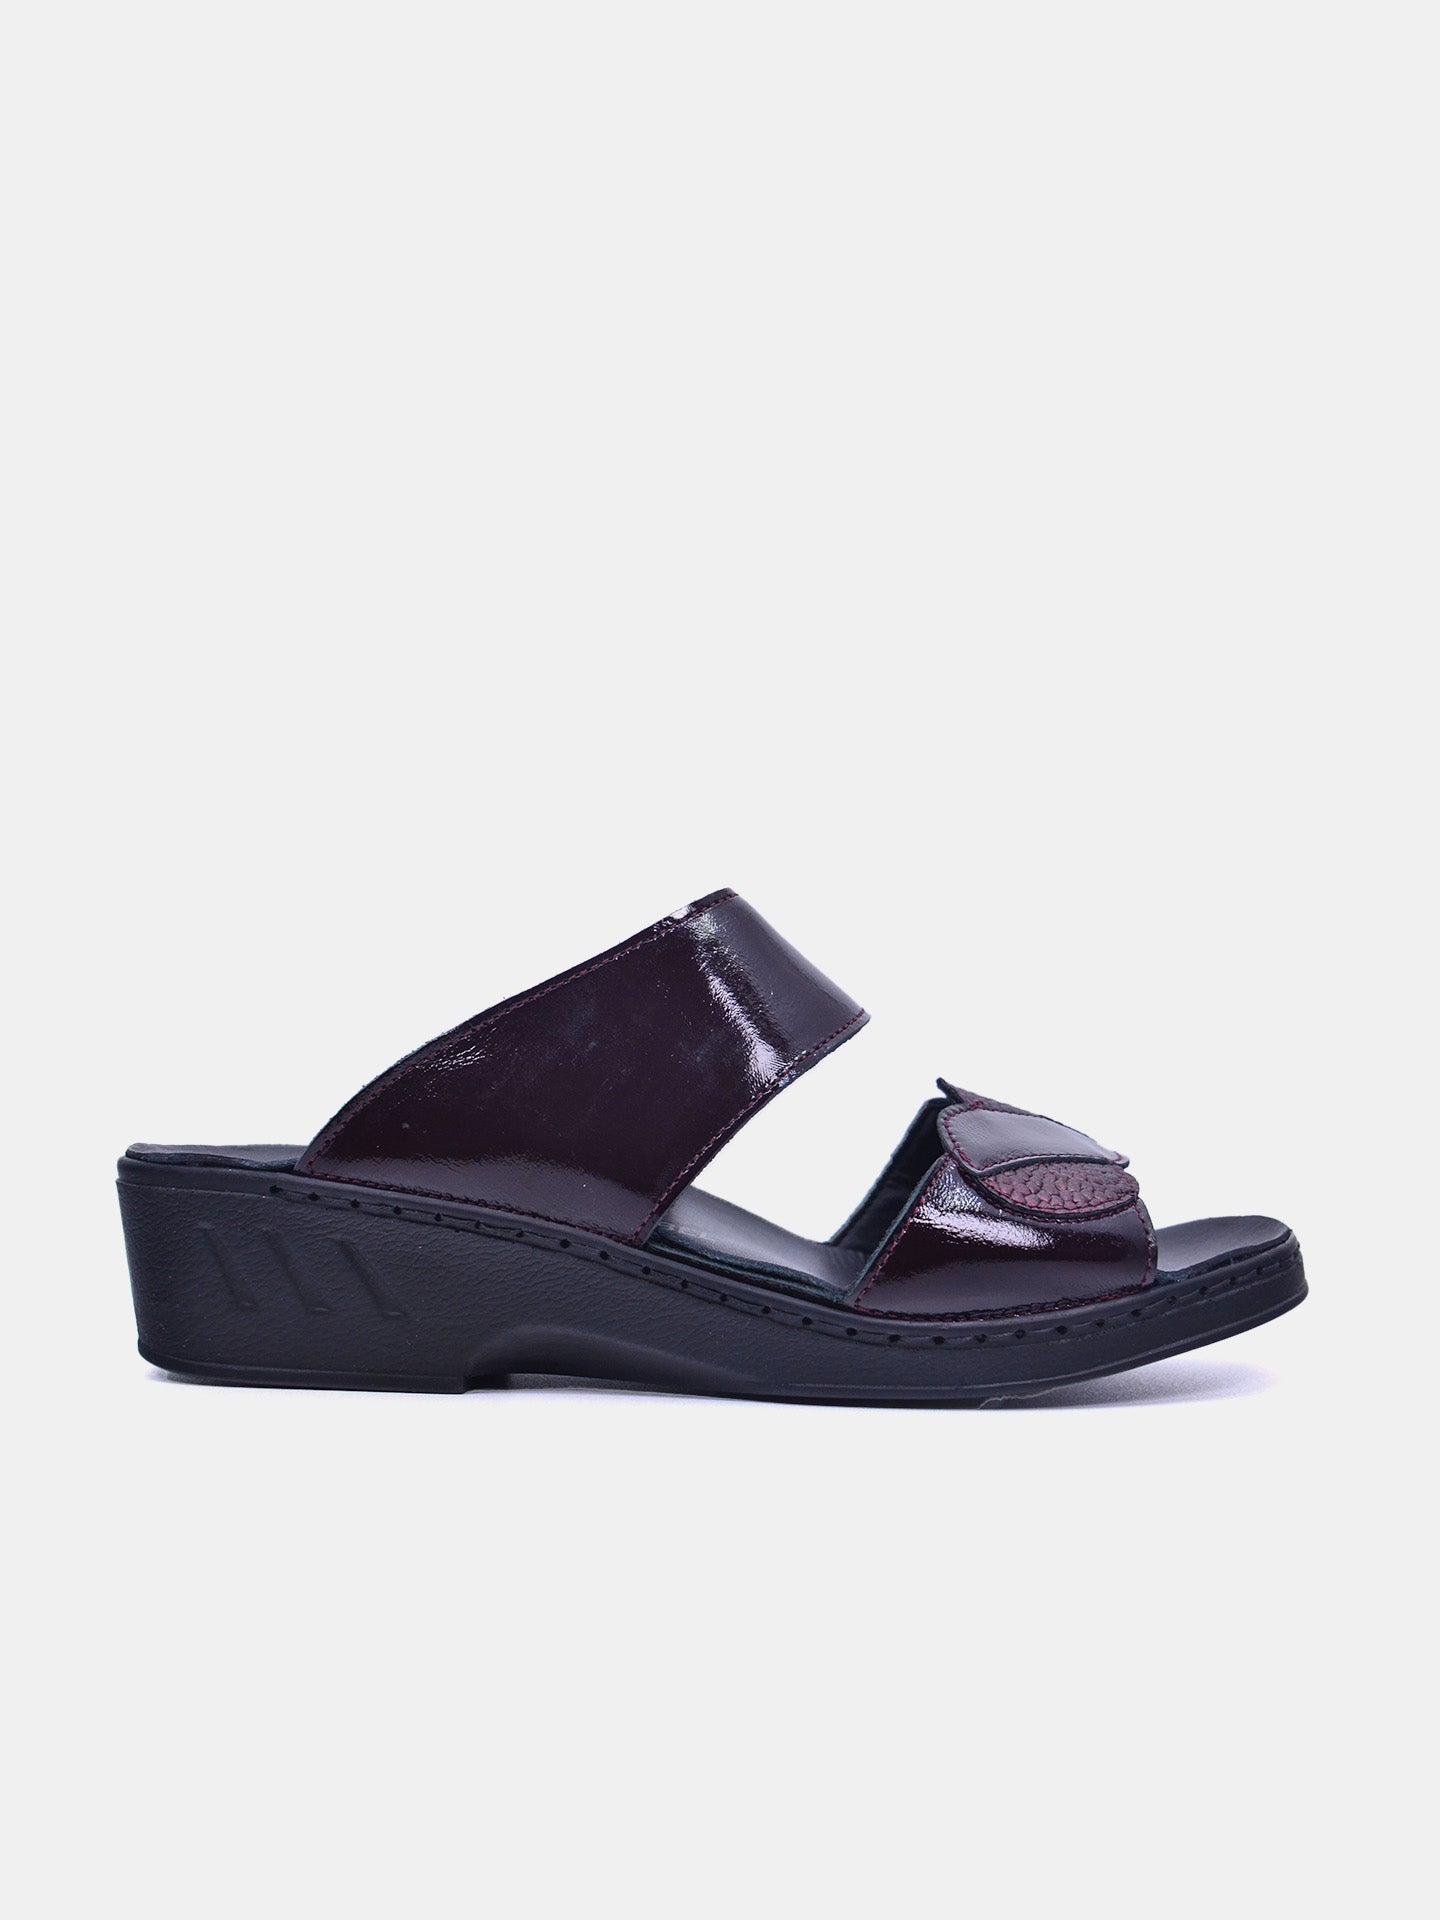 Josef Seibel 08829 Women's Flat Sandals #color_Maroon